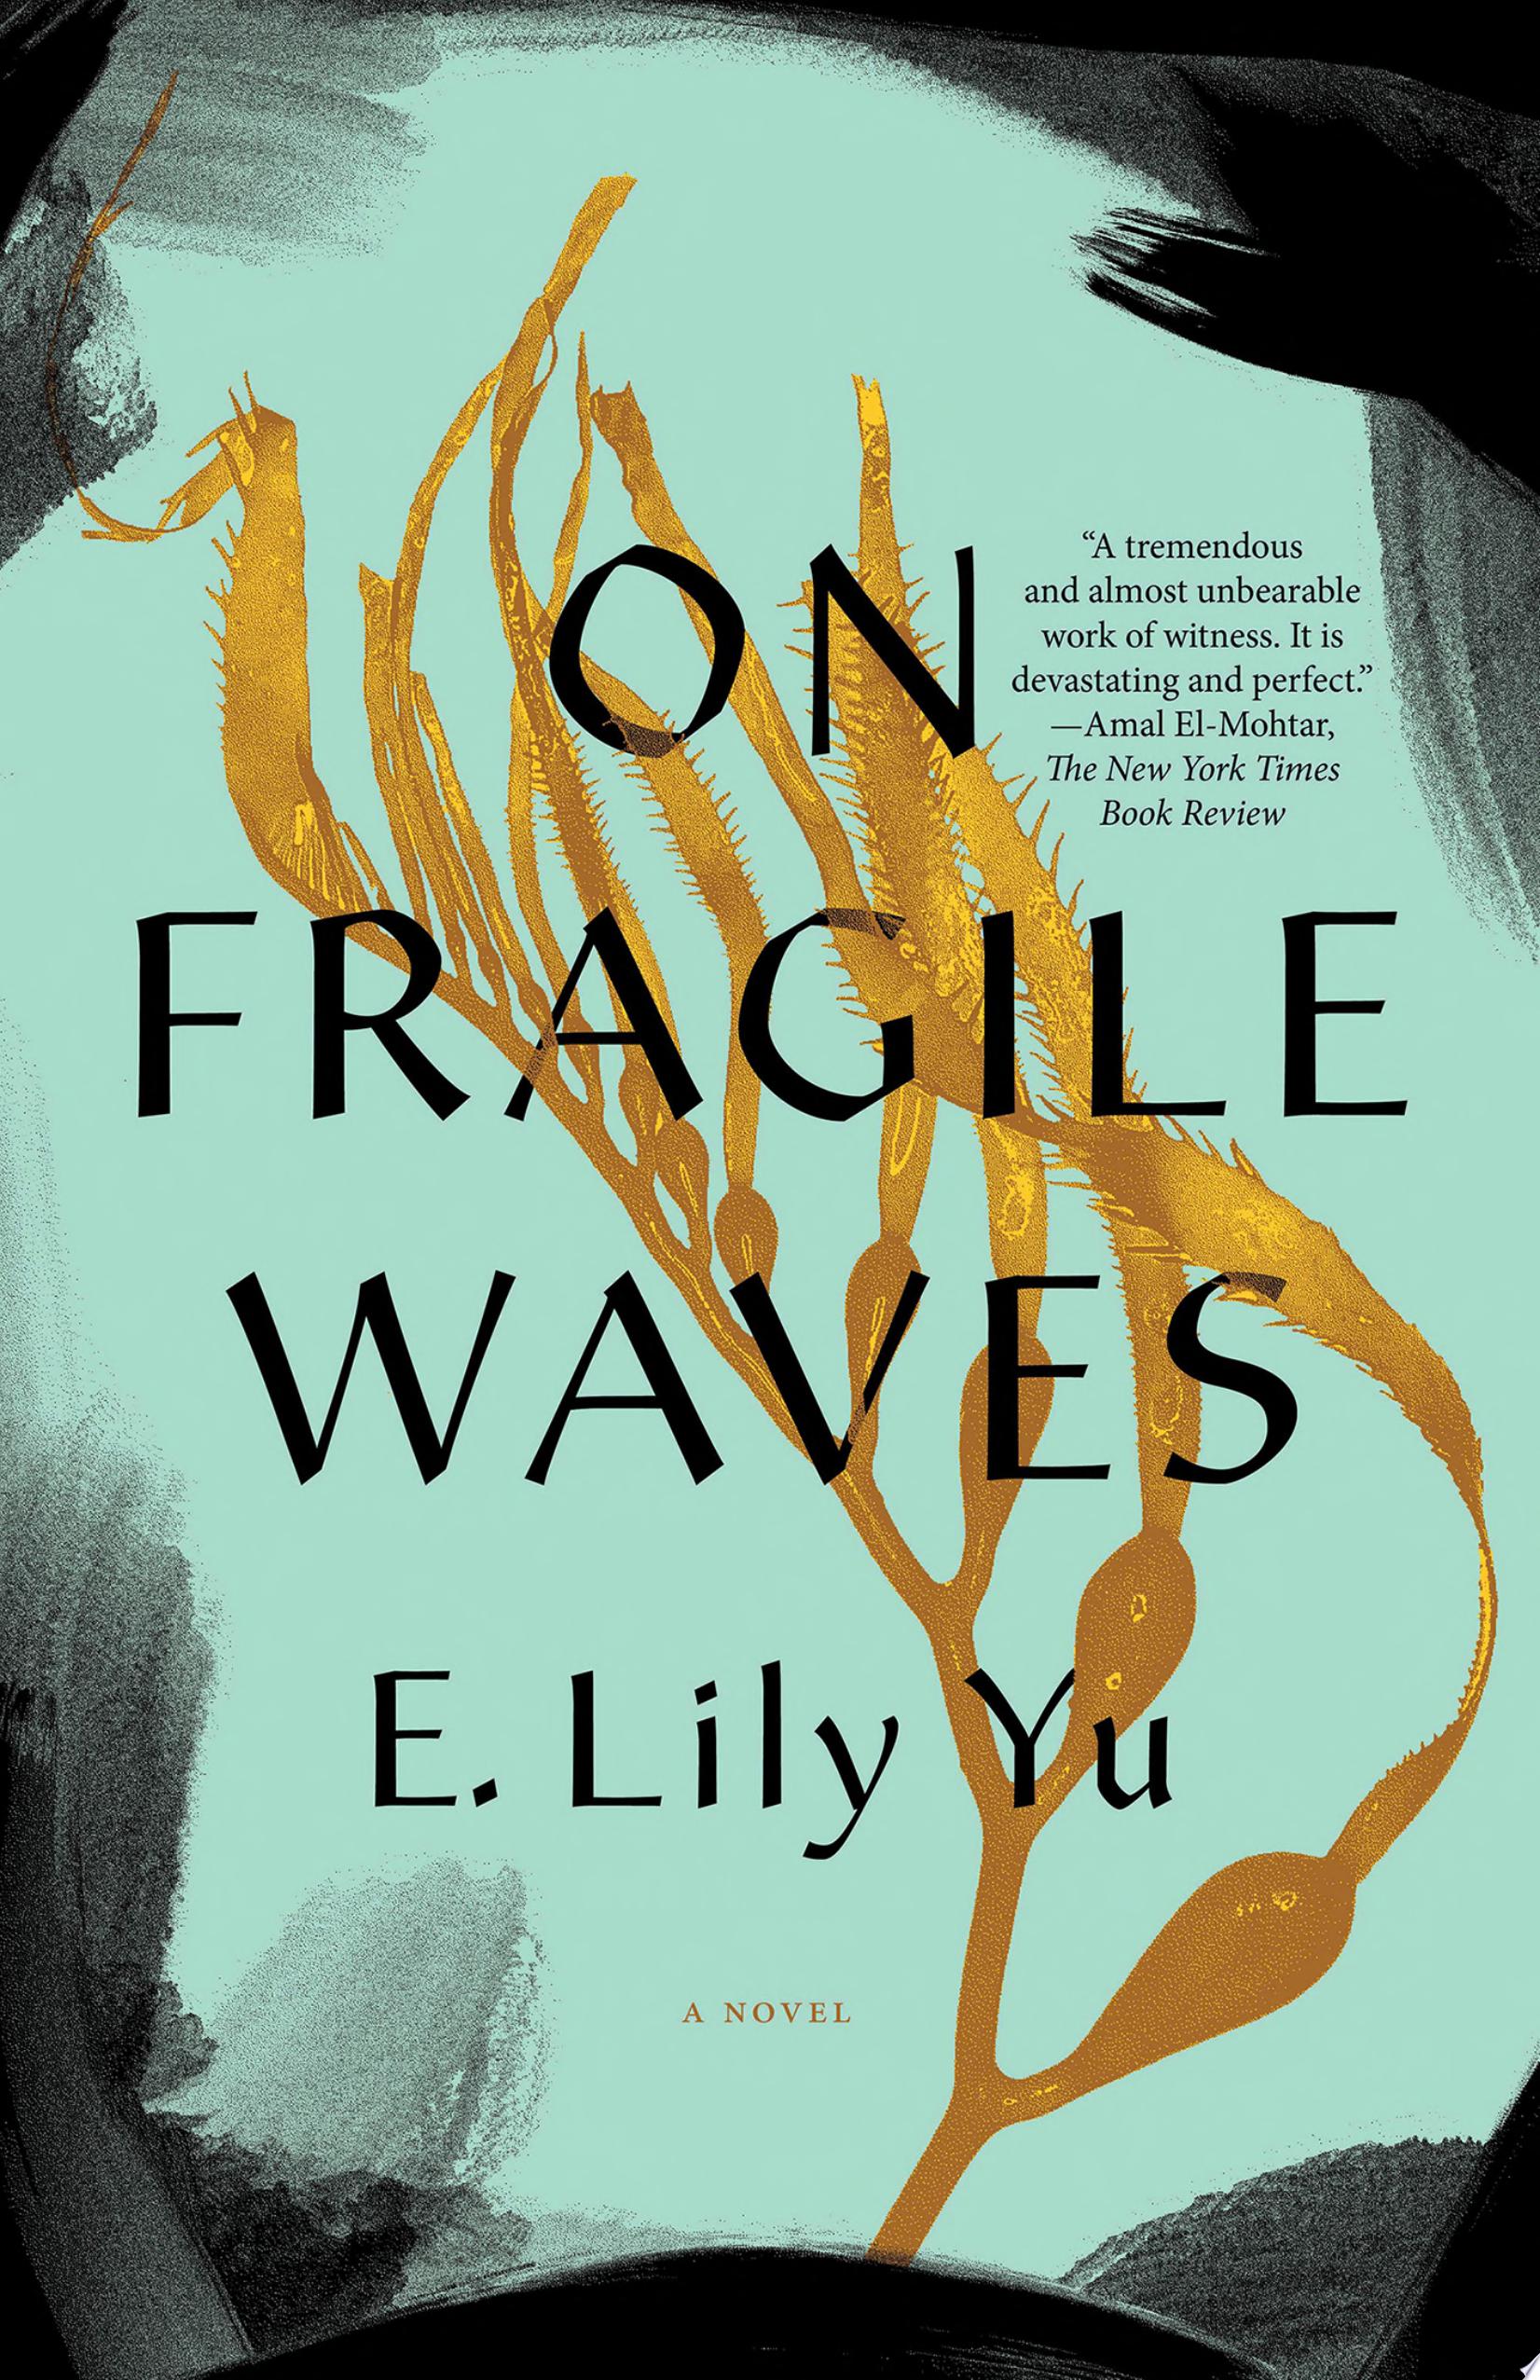 Image for "On Fragile Waves"